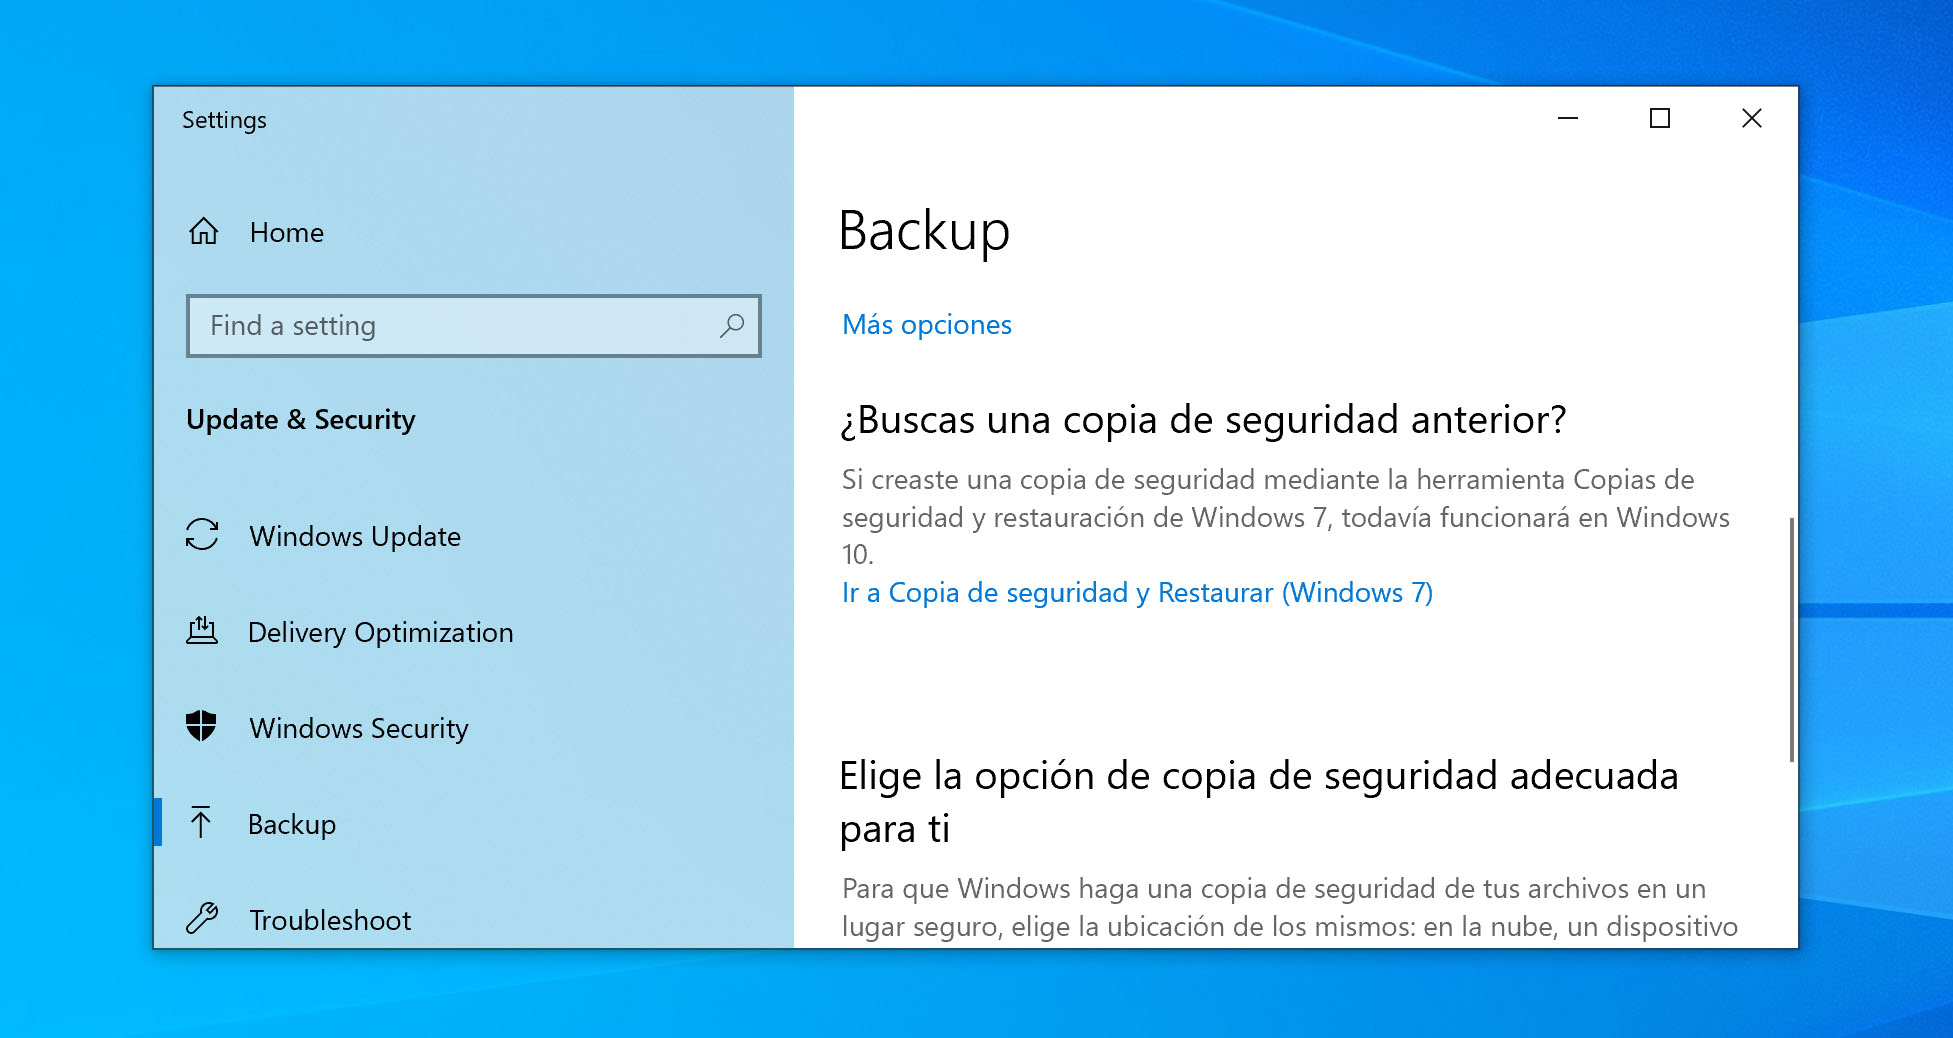 Ir a Copia de seguridad y Restaurar (Windows 7)